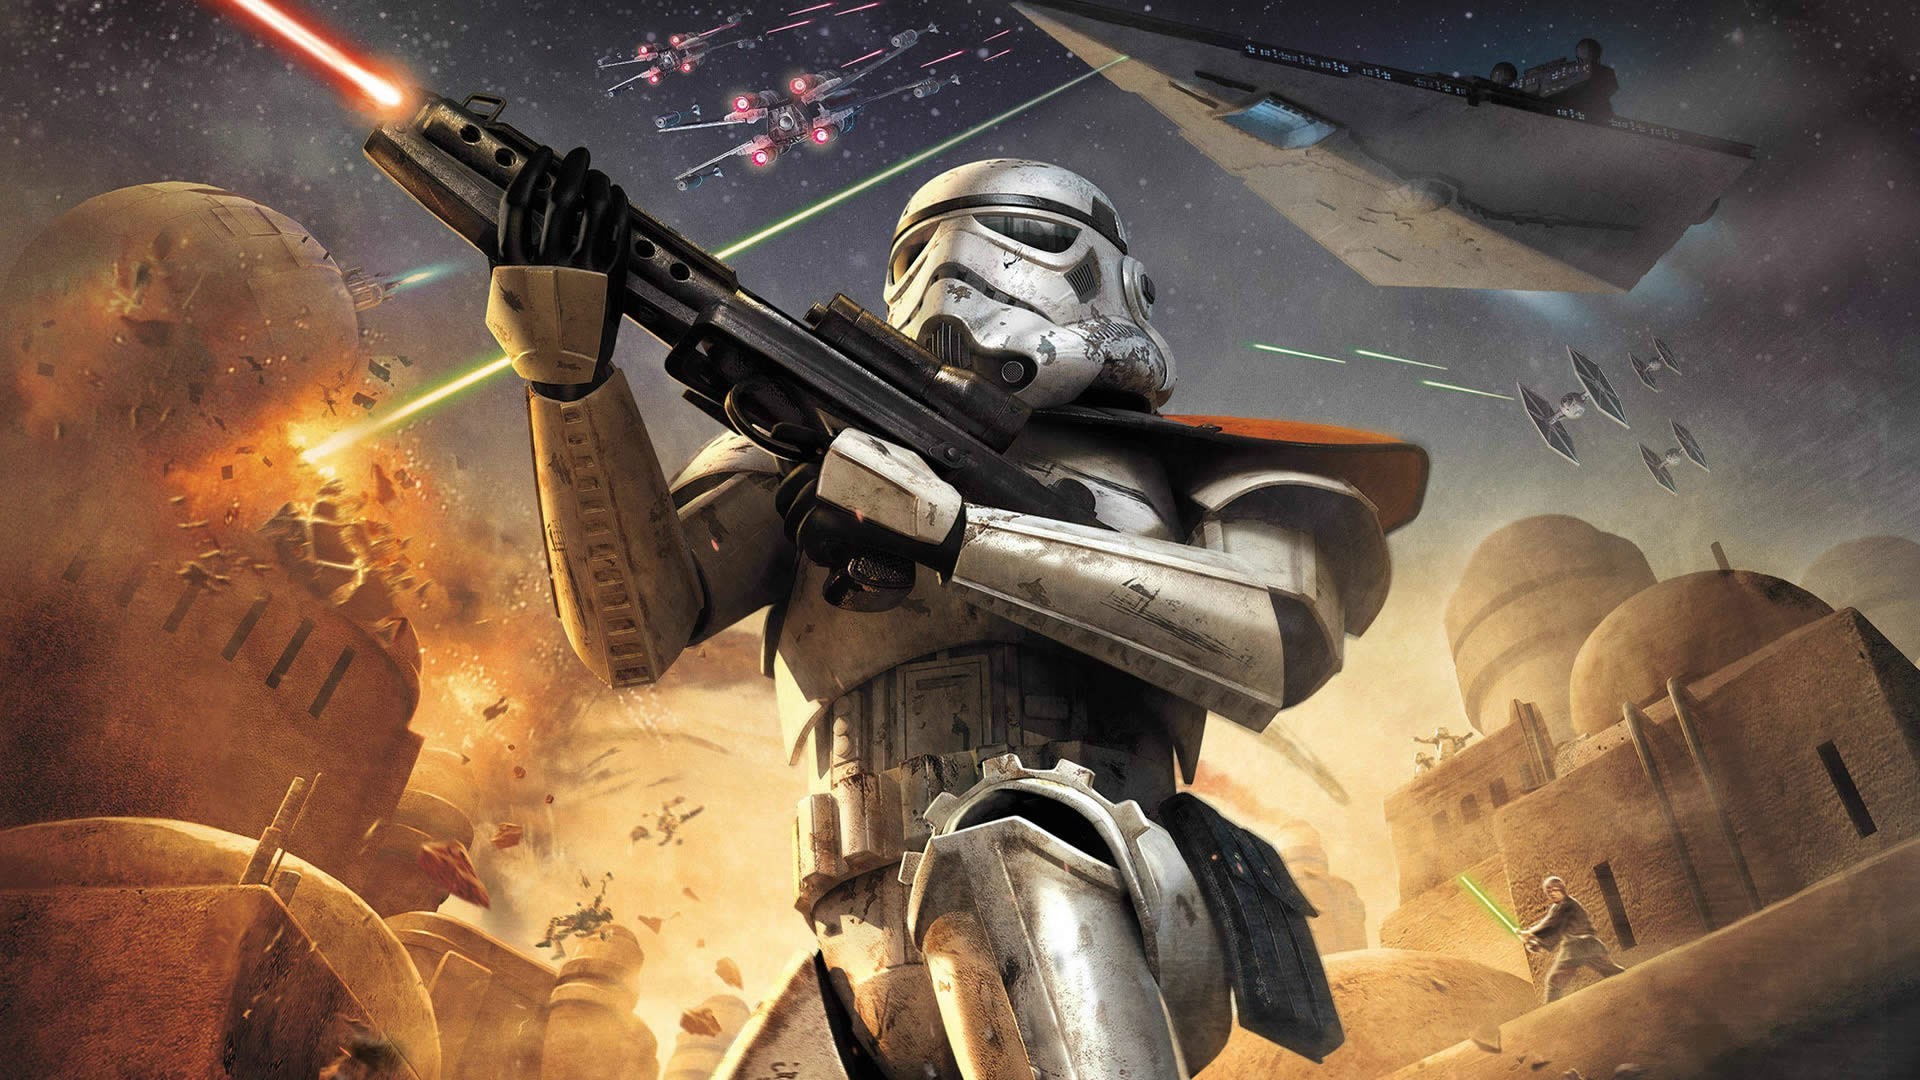 Digital Art Star Wars Star Wars Battlefront Video Games Stormtrooper Wallpapers Hd Desktop And Mobile Backgrounds